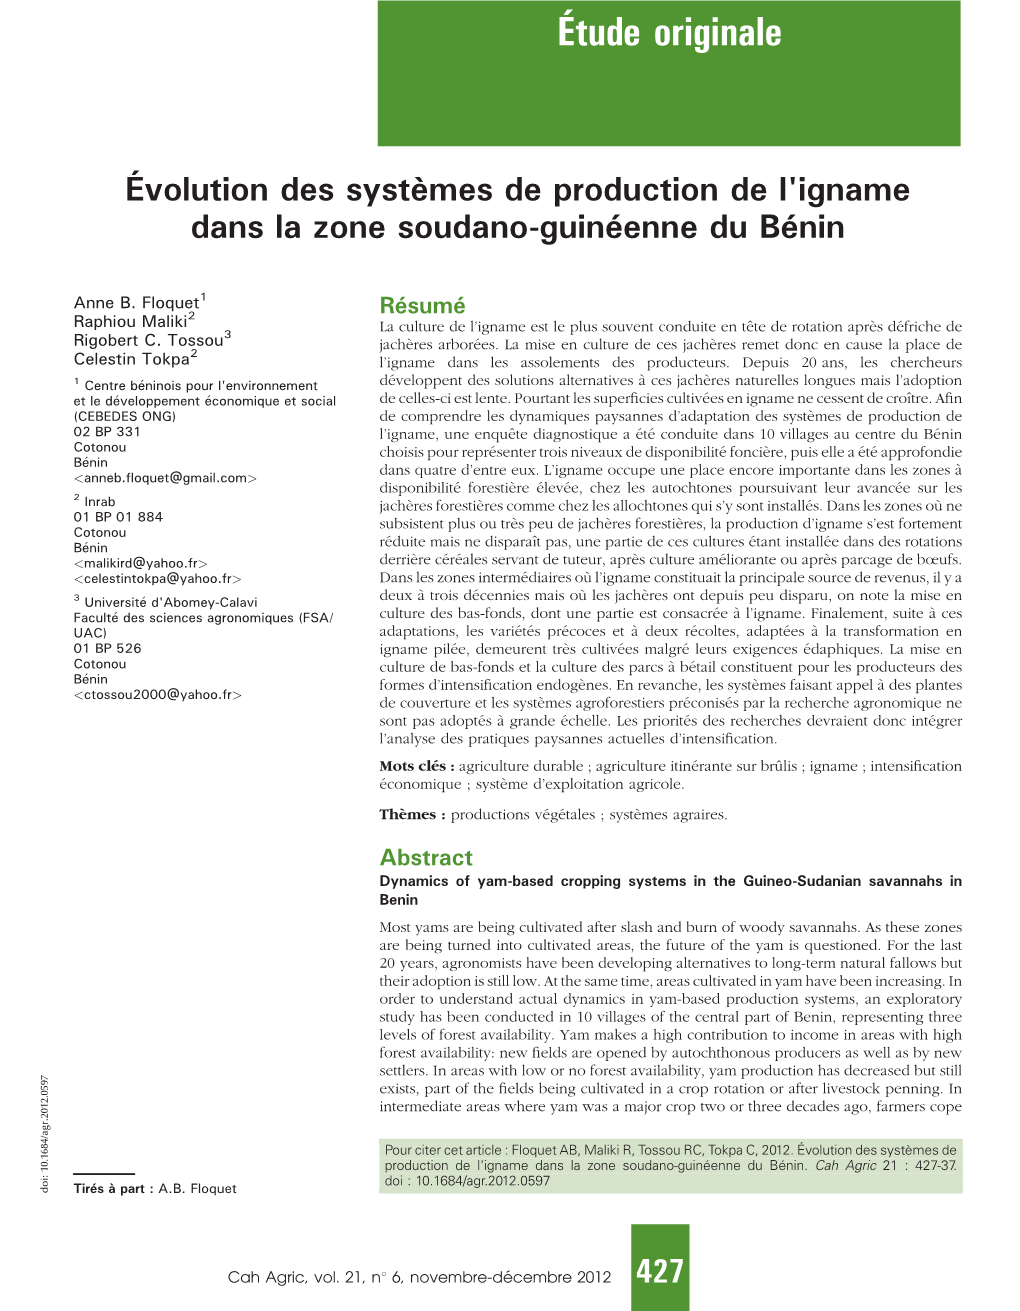 Évolution Des Systèmes De Production De L'igname Dans La Zone Soudano-Guinéenne Du Bénin